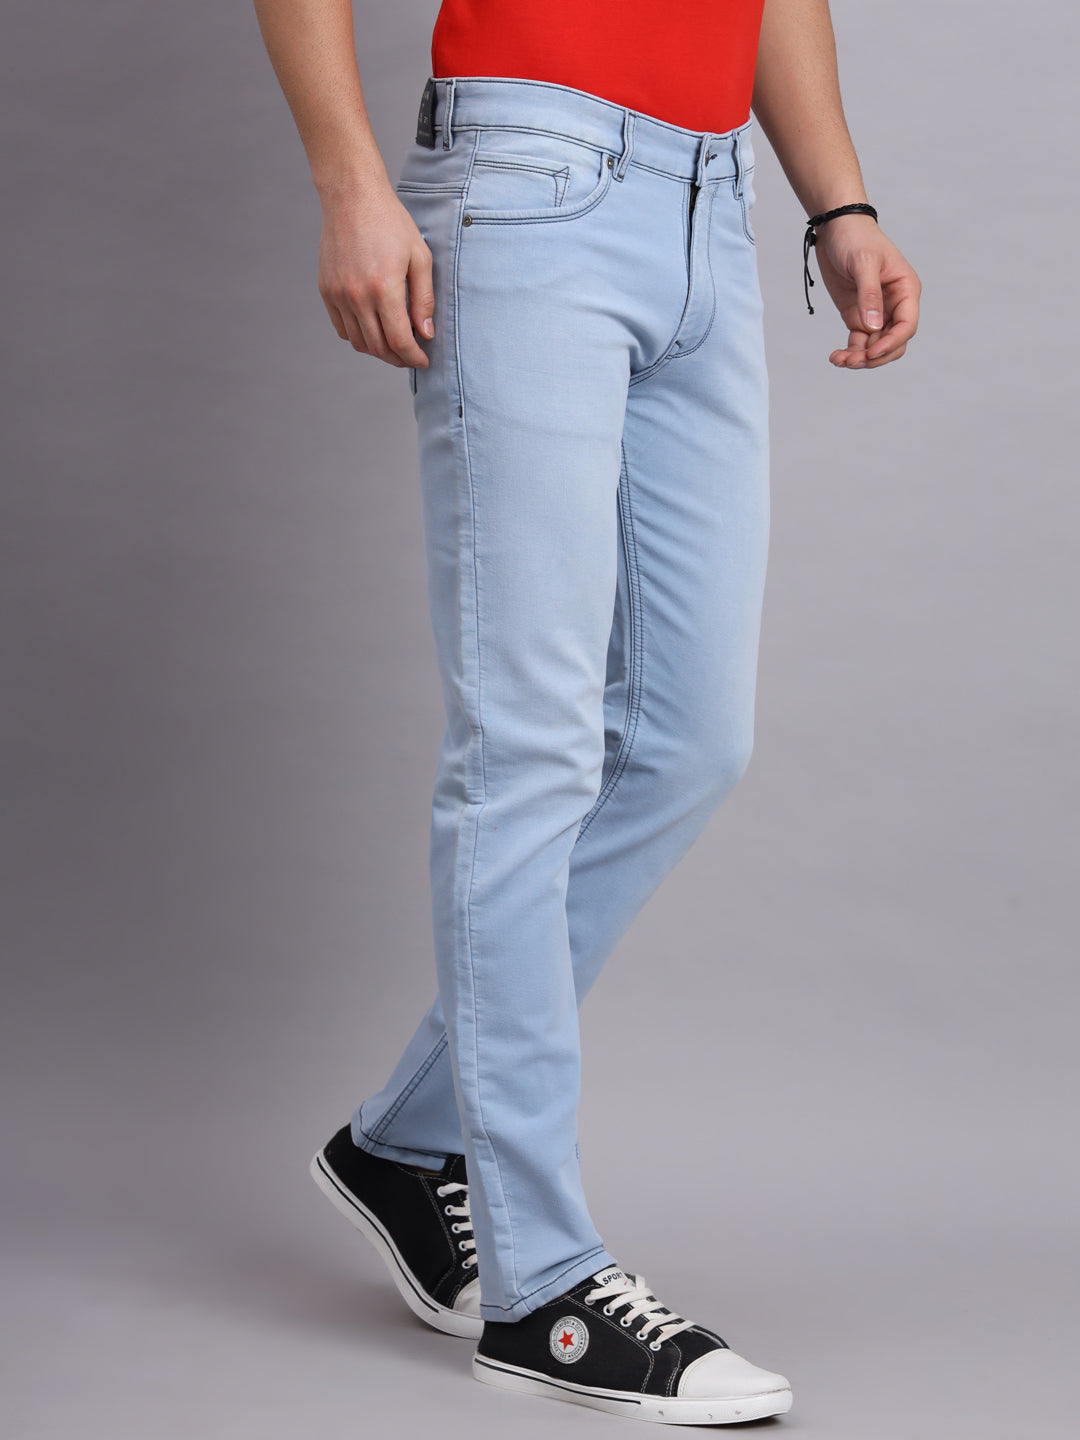 Amswan Premium Light Carbon Blue Men's Jeans